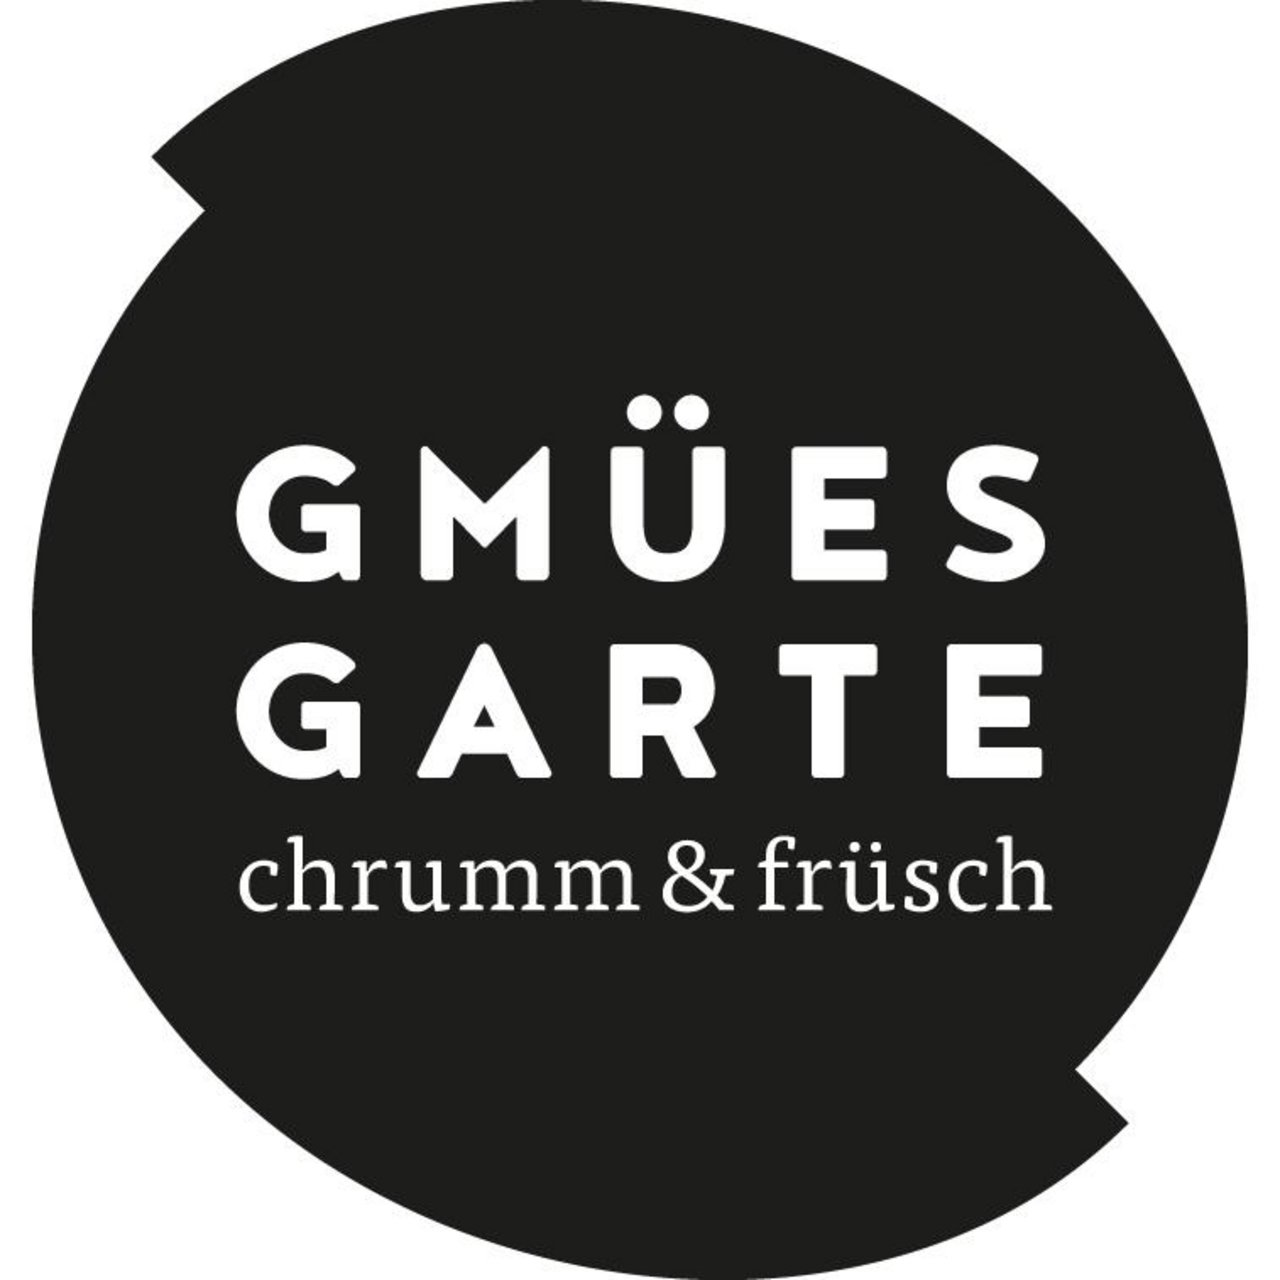 «Chrumm und früsch» lautet das Credo beim Gmüesgarte. (Bild zVg)